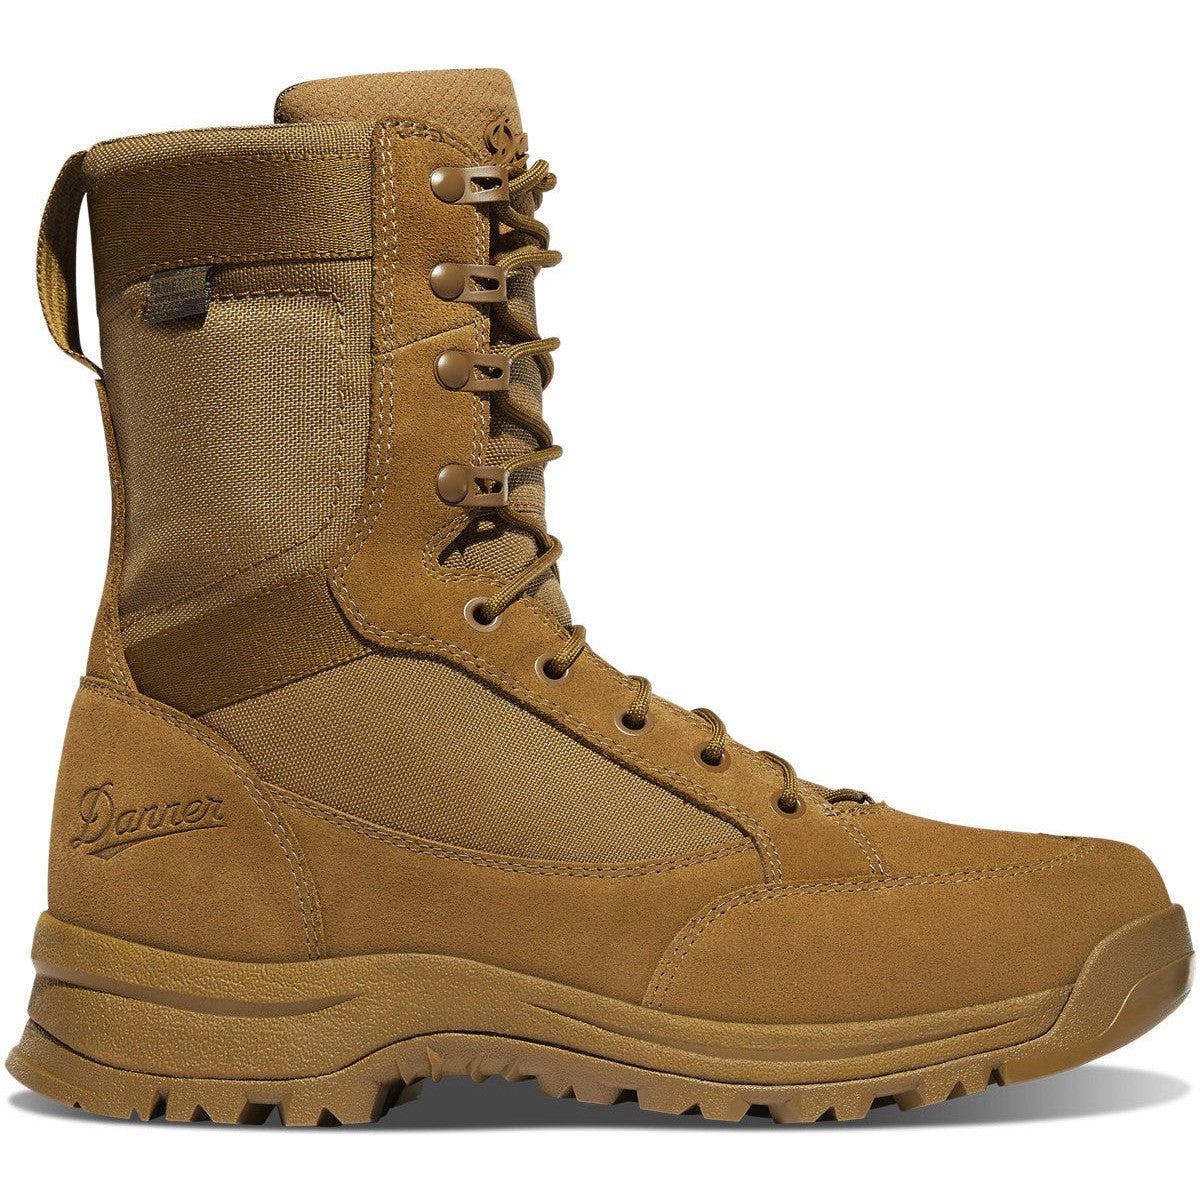 Danner Men's Tanicus 8" Waterproof Military Work Boot -Coyote- 55317 3 / Medium / Coyote - Overlook Boots